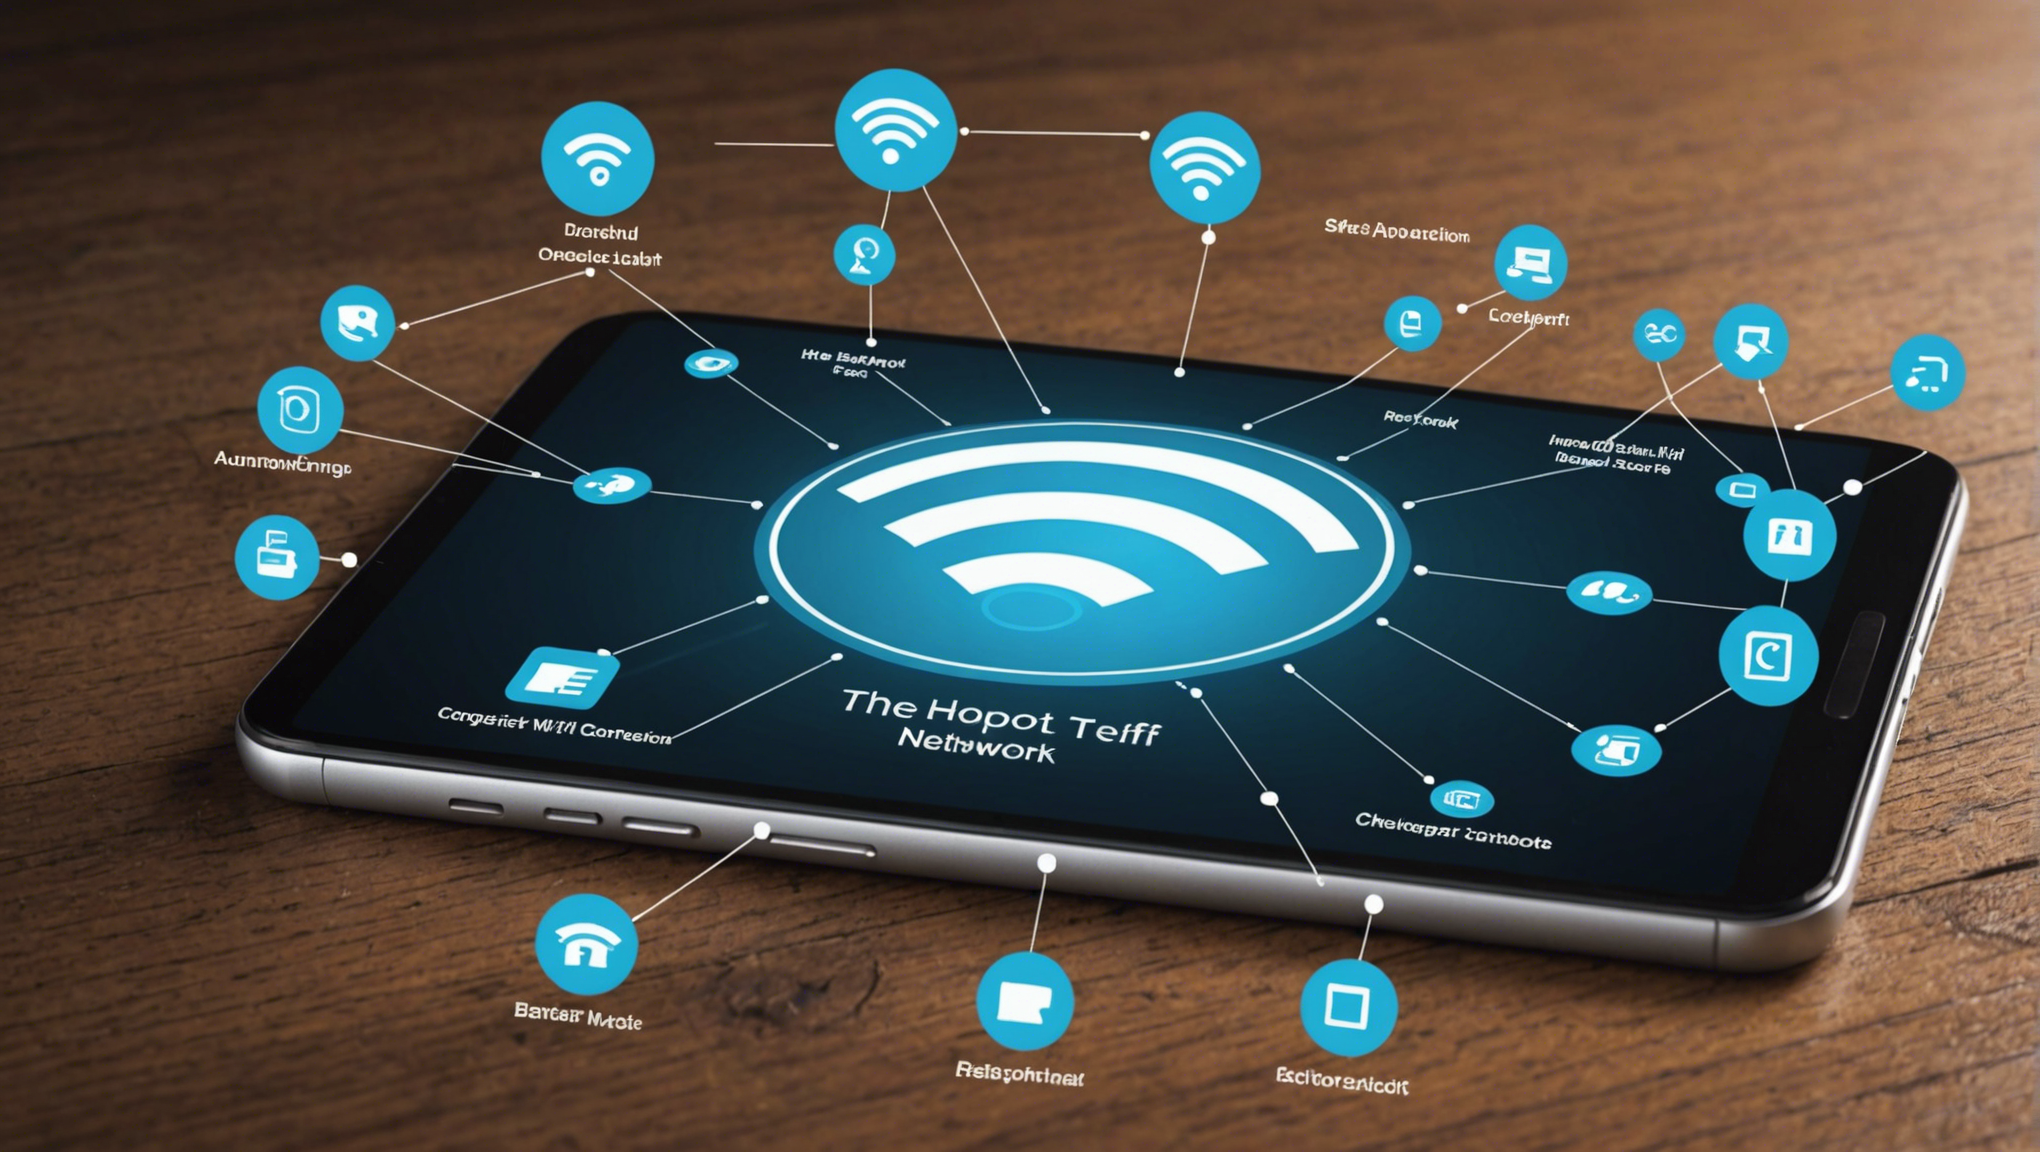 découvrez comment le réseau hotspot peut vous offrir une connexion wi-fi rapide et sécurisée. les avantages et les clés pour une utilisation optimale.